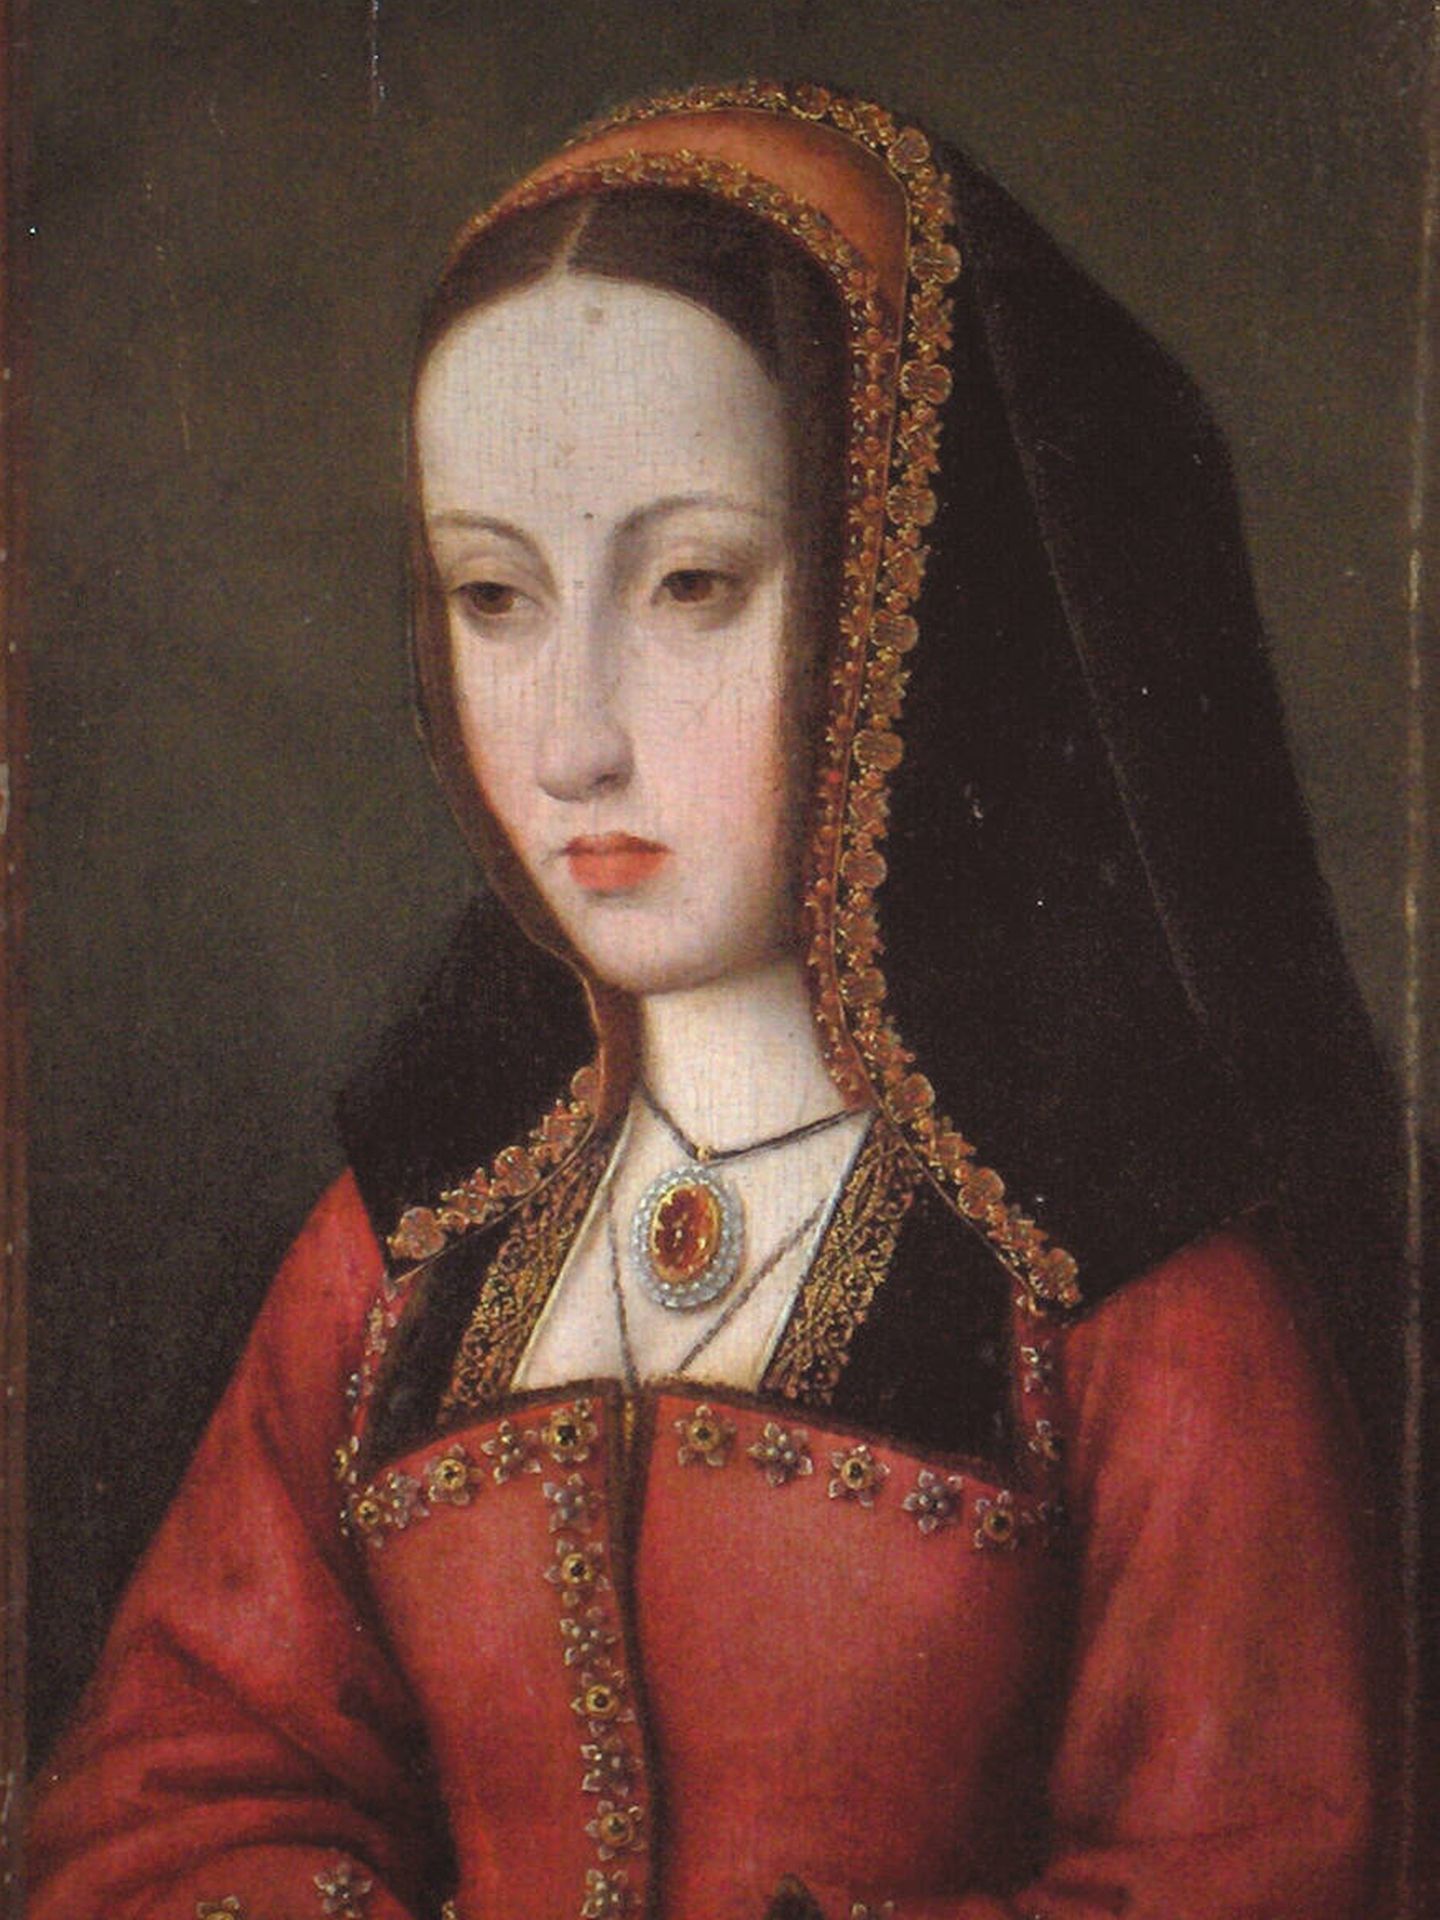 Retrato de Juana I de Castilla del 1500.